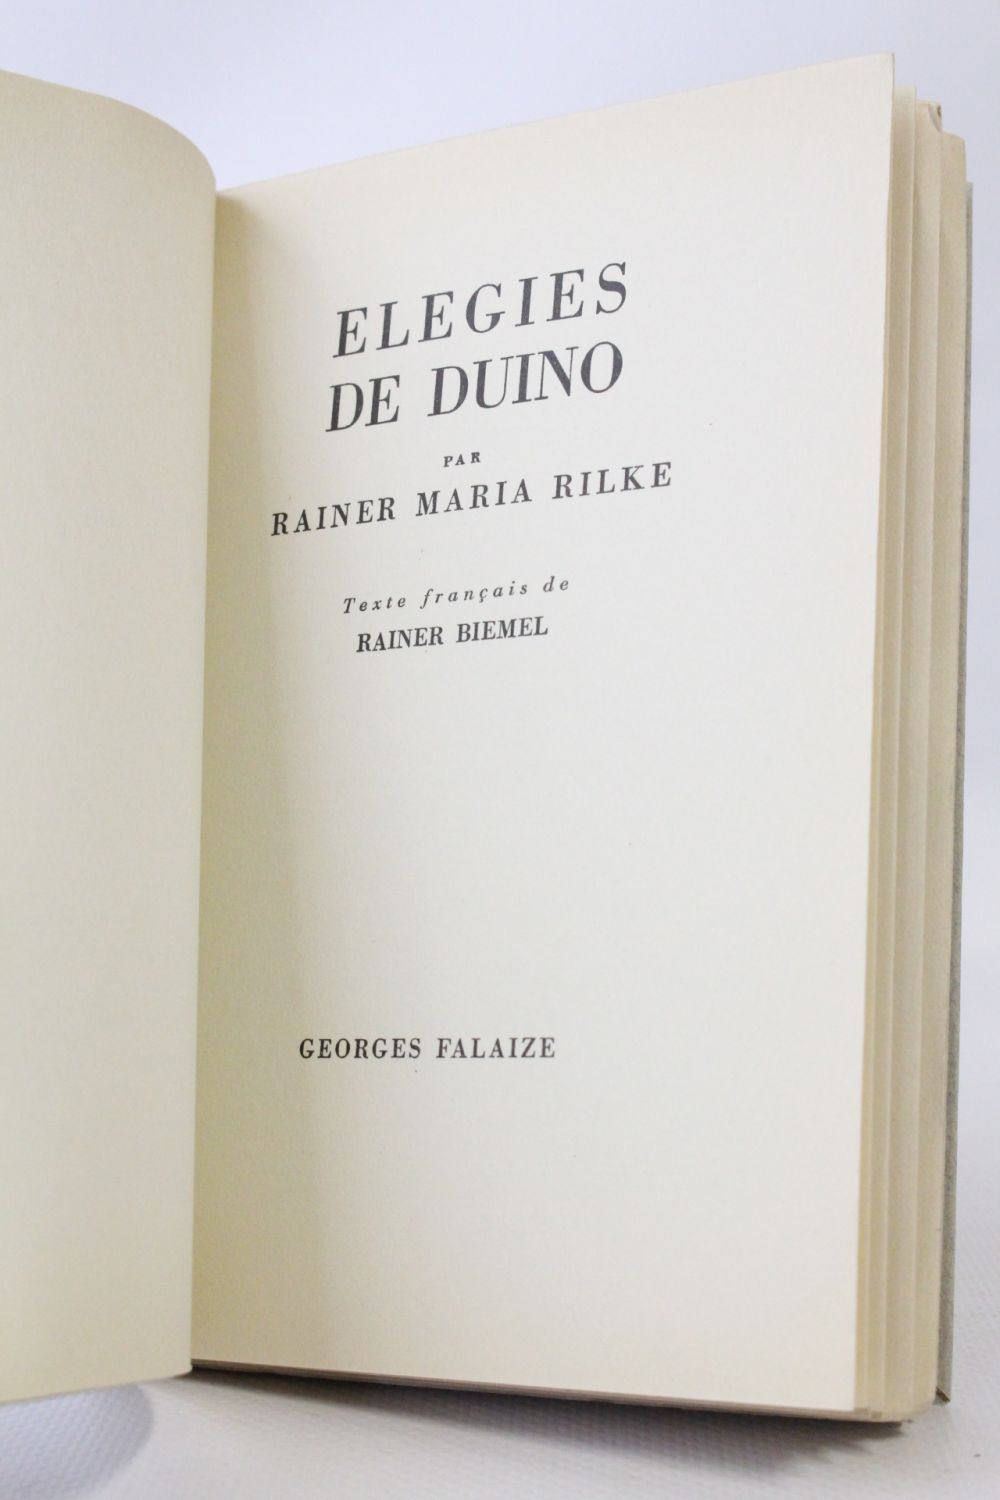 Duino Elegies by Rainer Maria Rilke